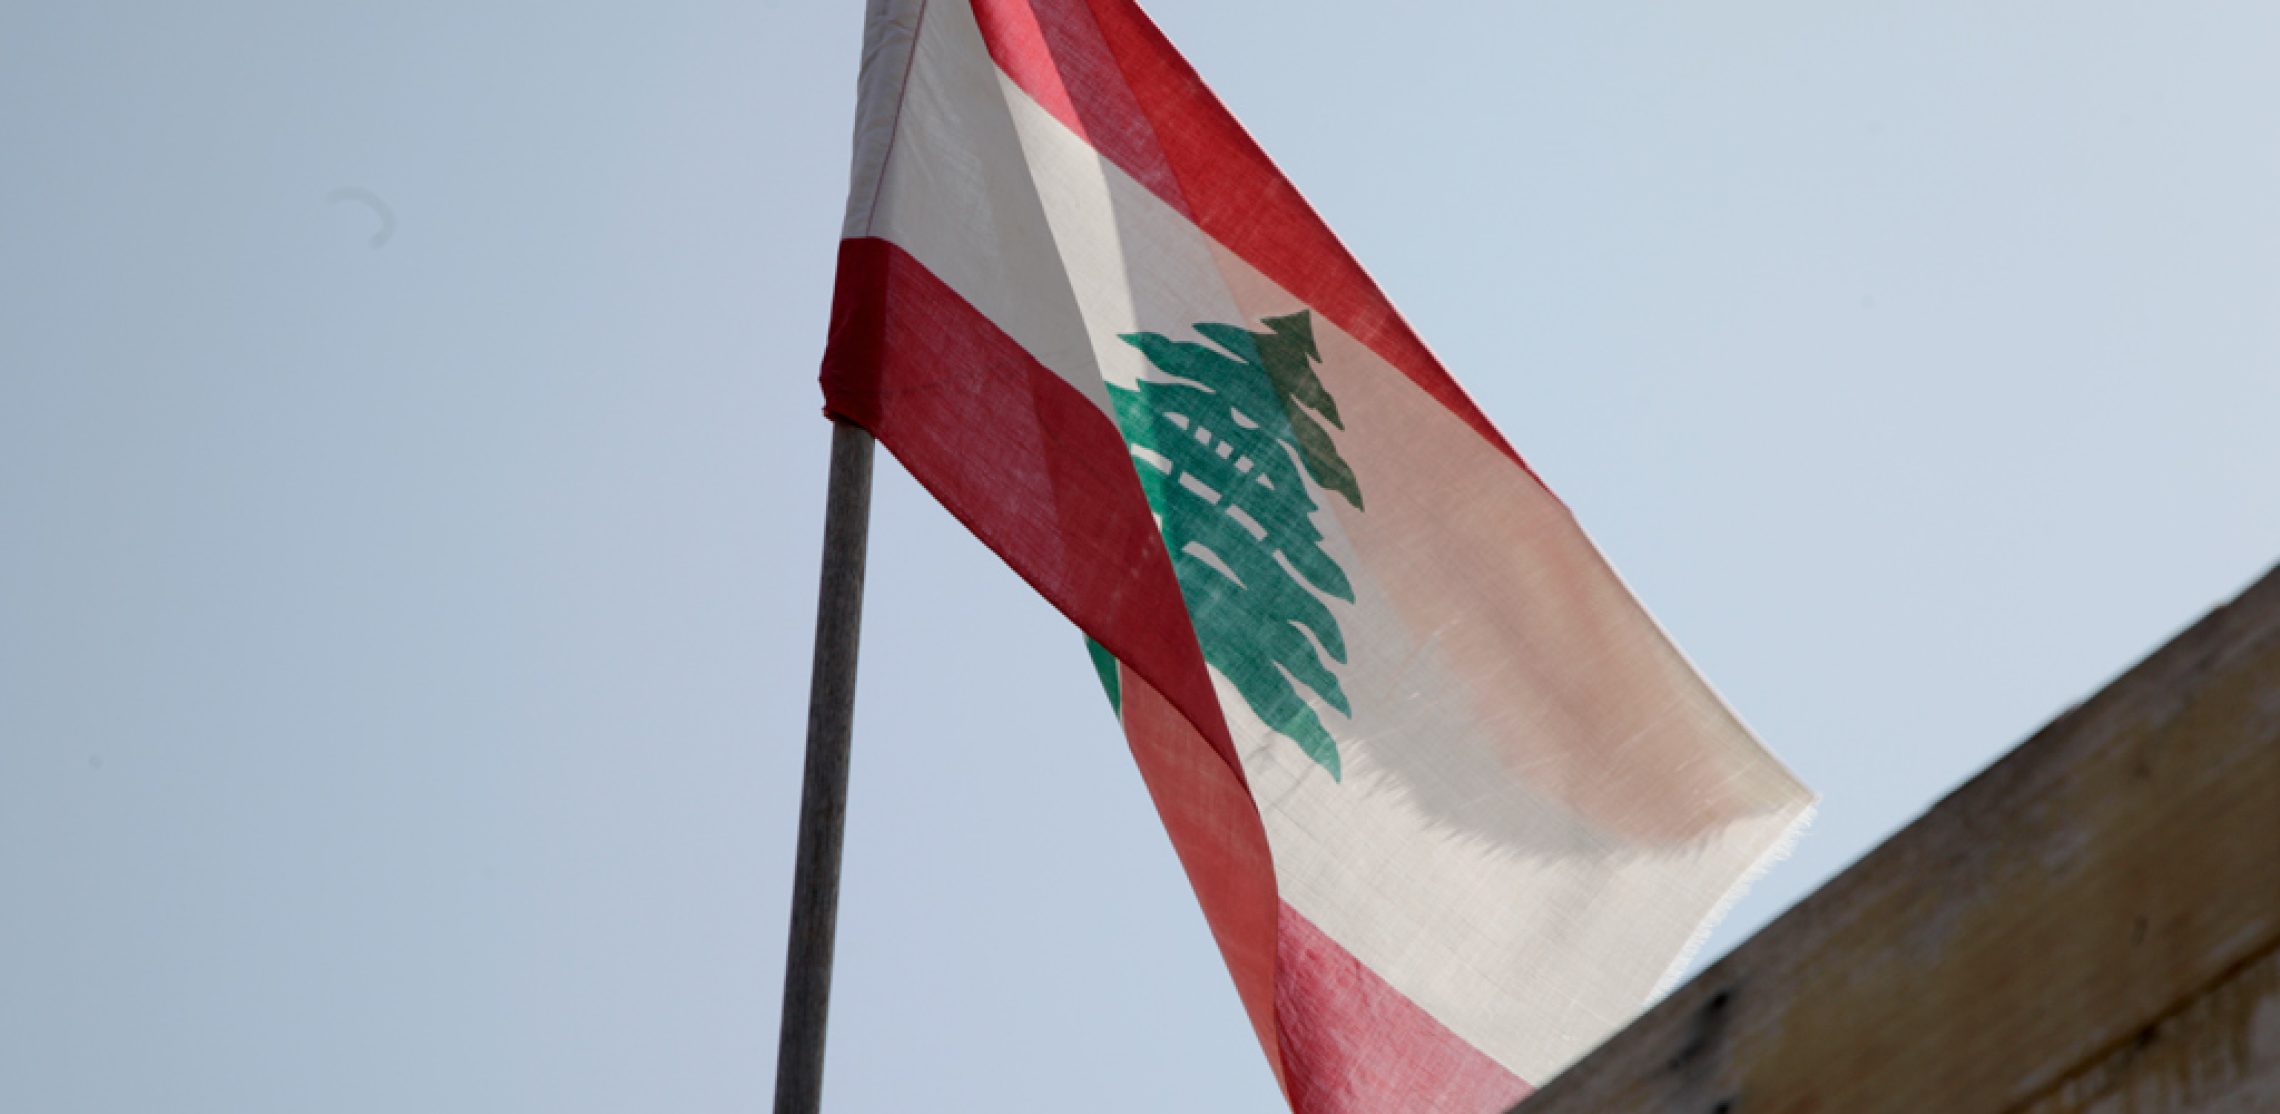 Kein Wappentier, sondern eine mächtige Zeder ist das traditionelle Emblem des Libanon